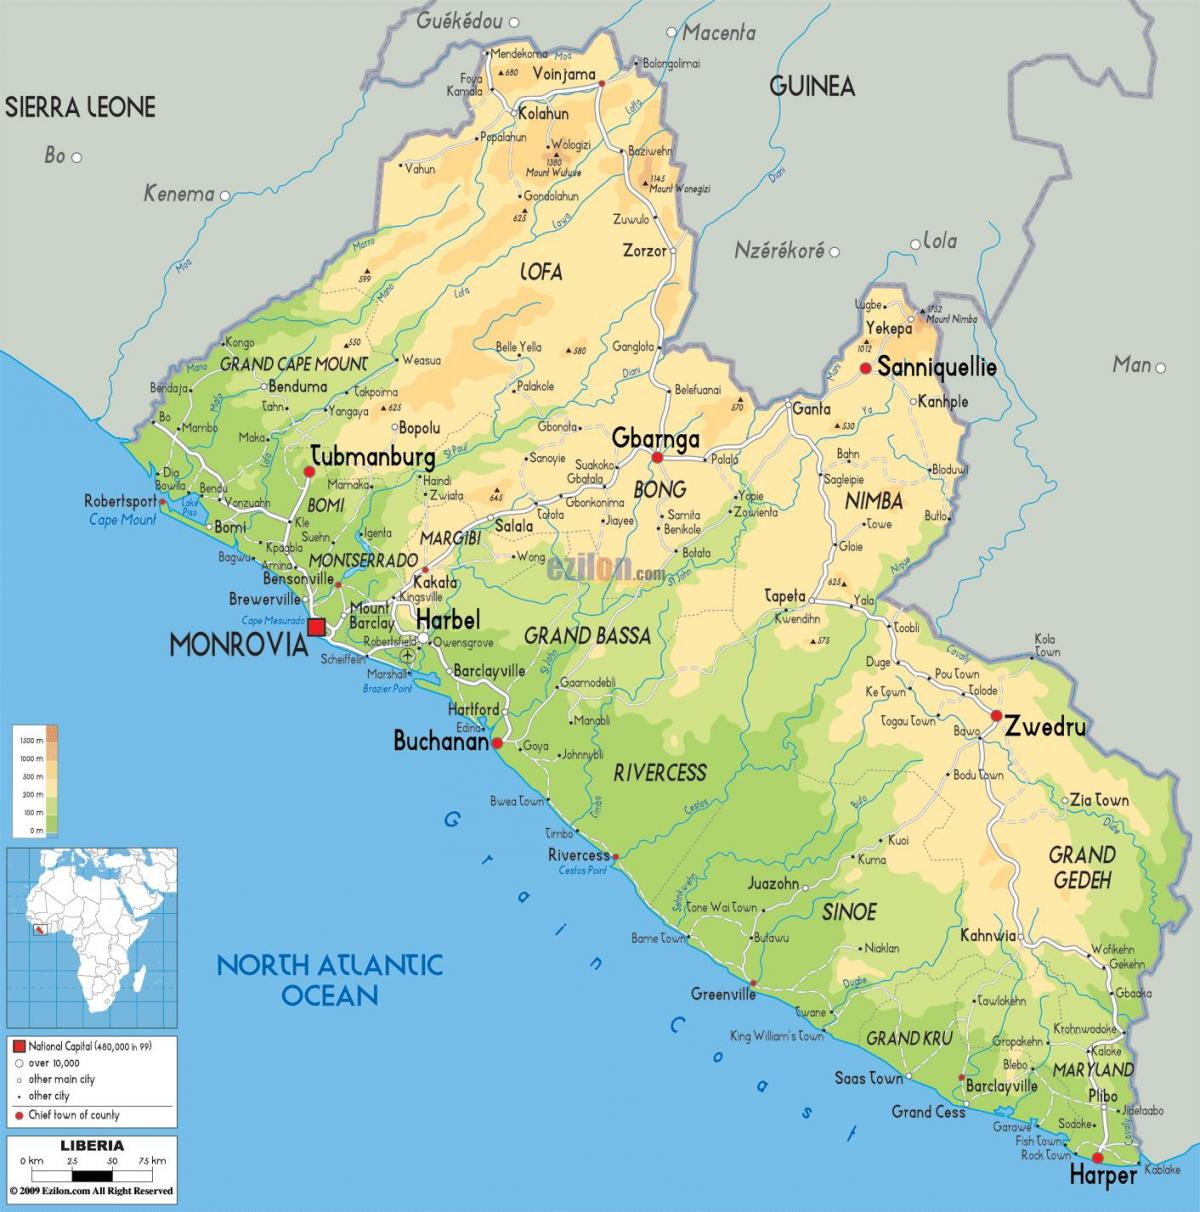 trek die kaart van Liberië